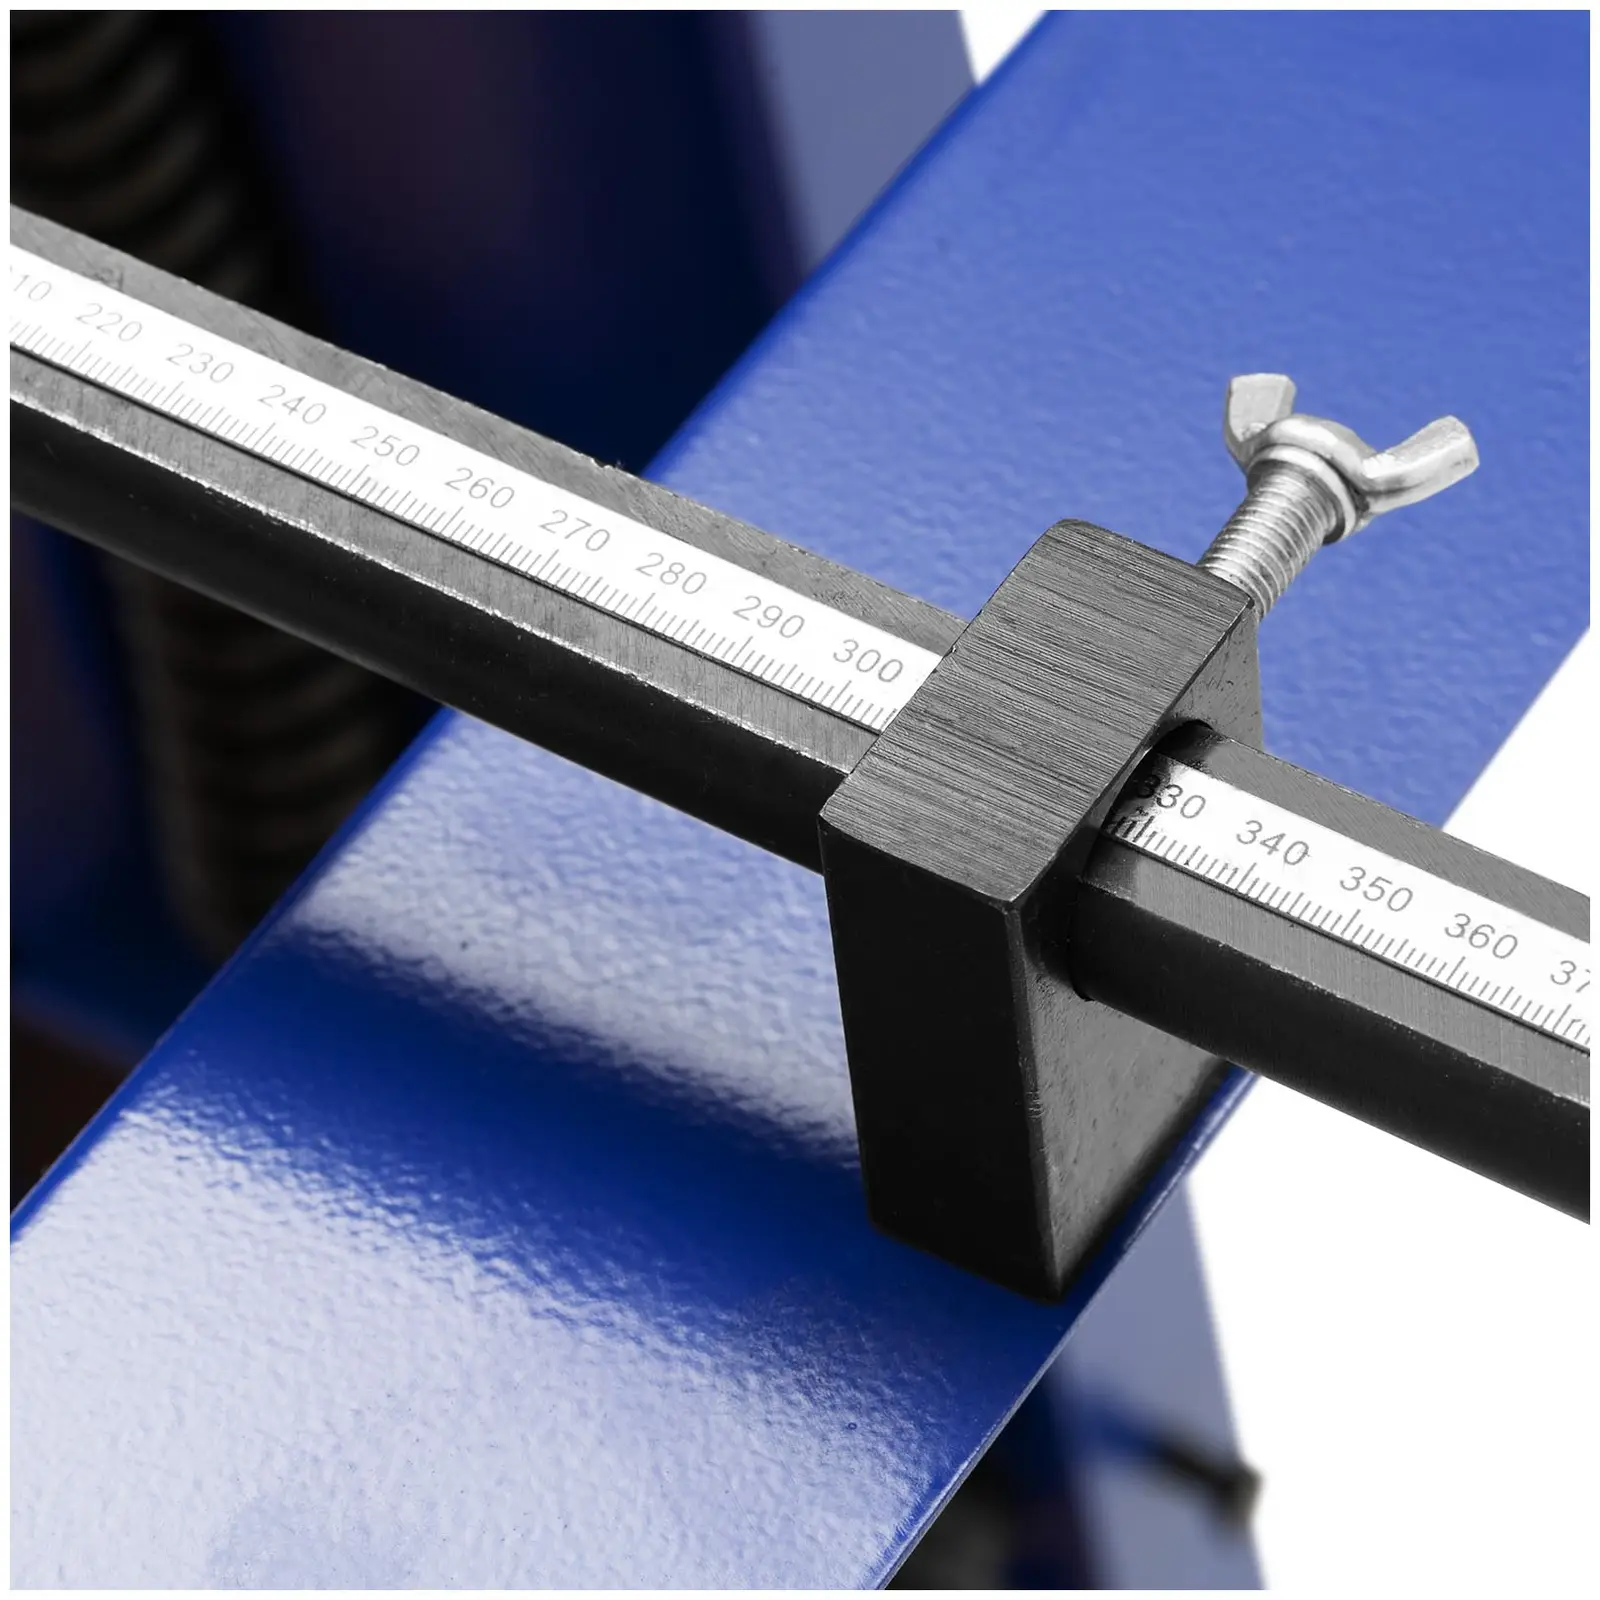 Tesoura guilhotina para chapas - com base - pedal - comprimento de corte 1320 mm - espessura do material até 1,5 mm - espaçamento traseiro 0-840 mm